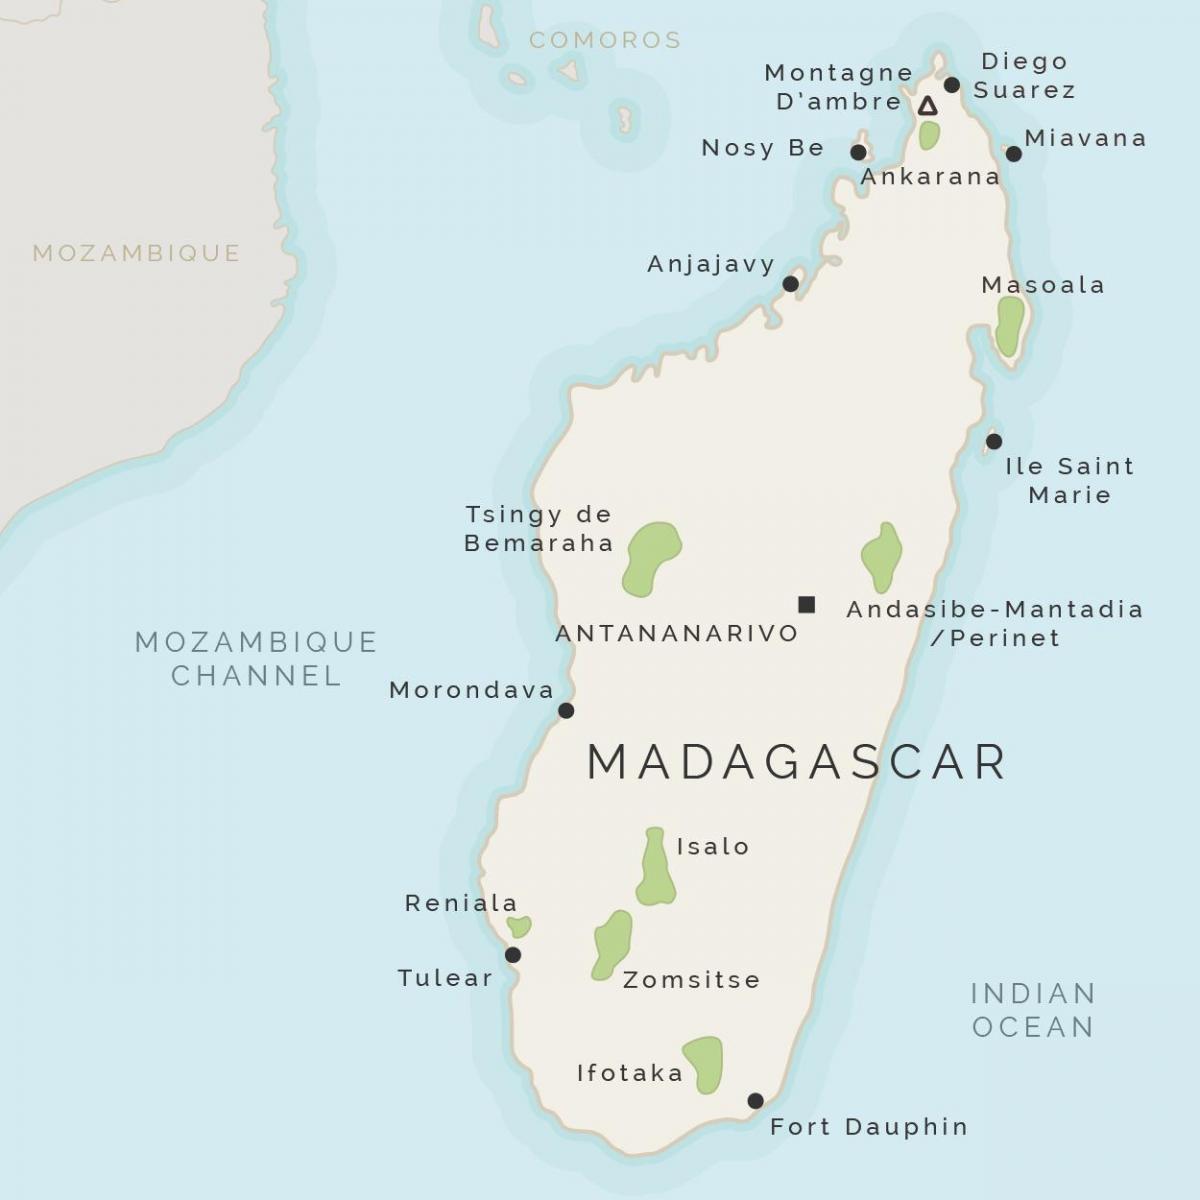 خريطة مدغشقر والجزر المحيطة